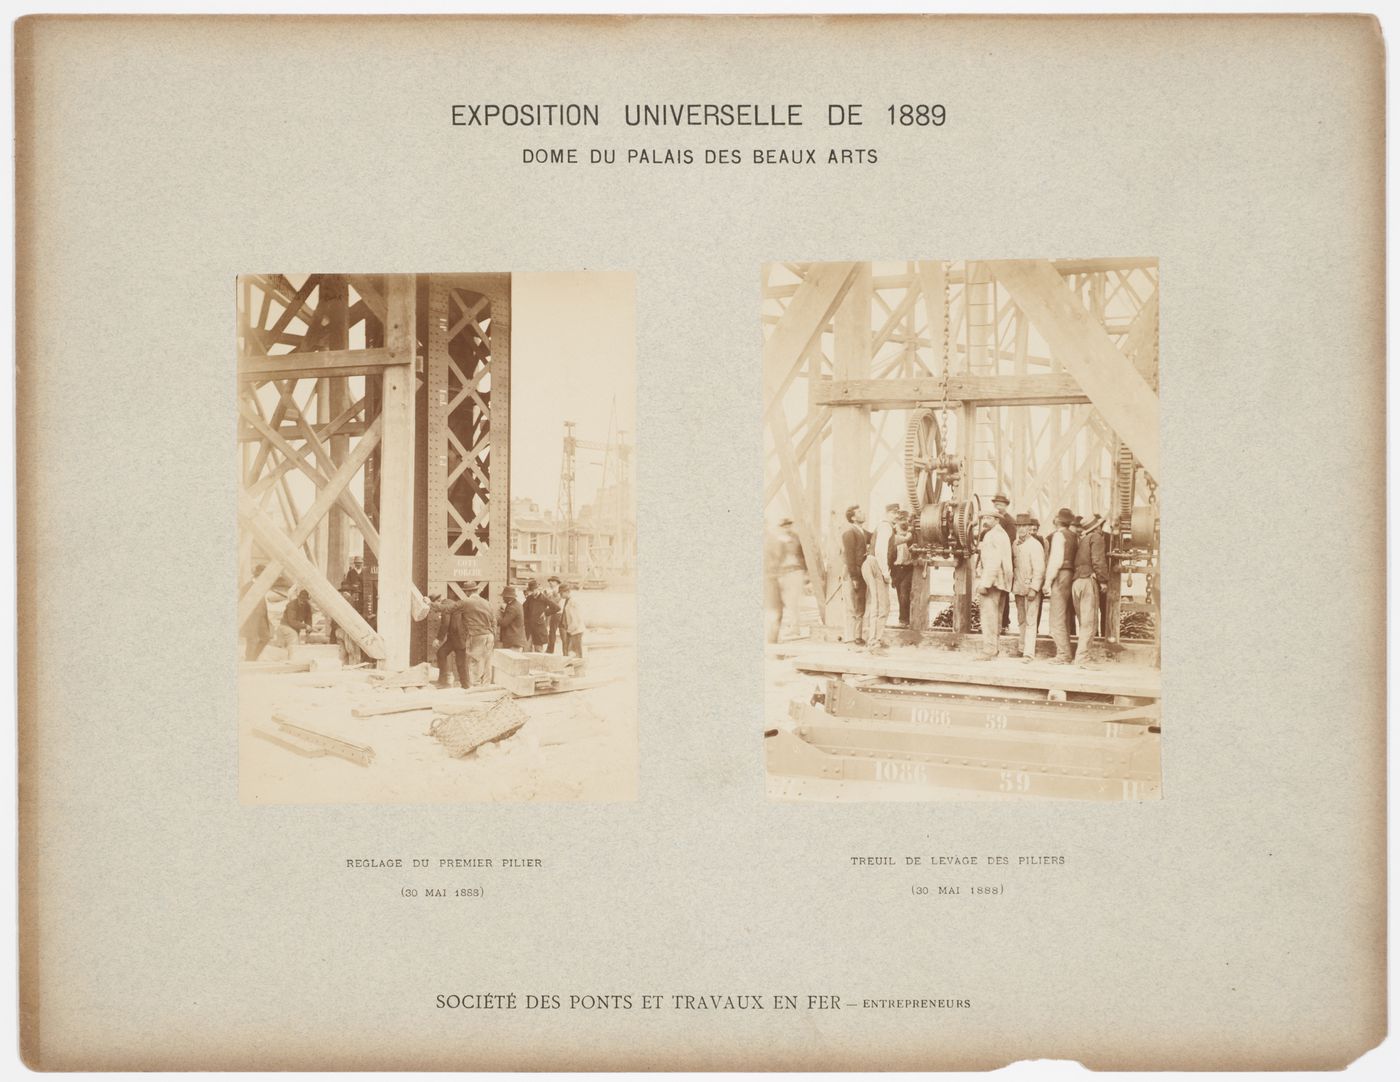 Views of installation of the pillers of the Dome du Palais des Beaux Arts, Exposition Universelle de 1889, Paris, France